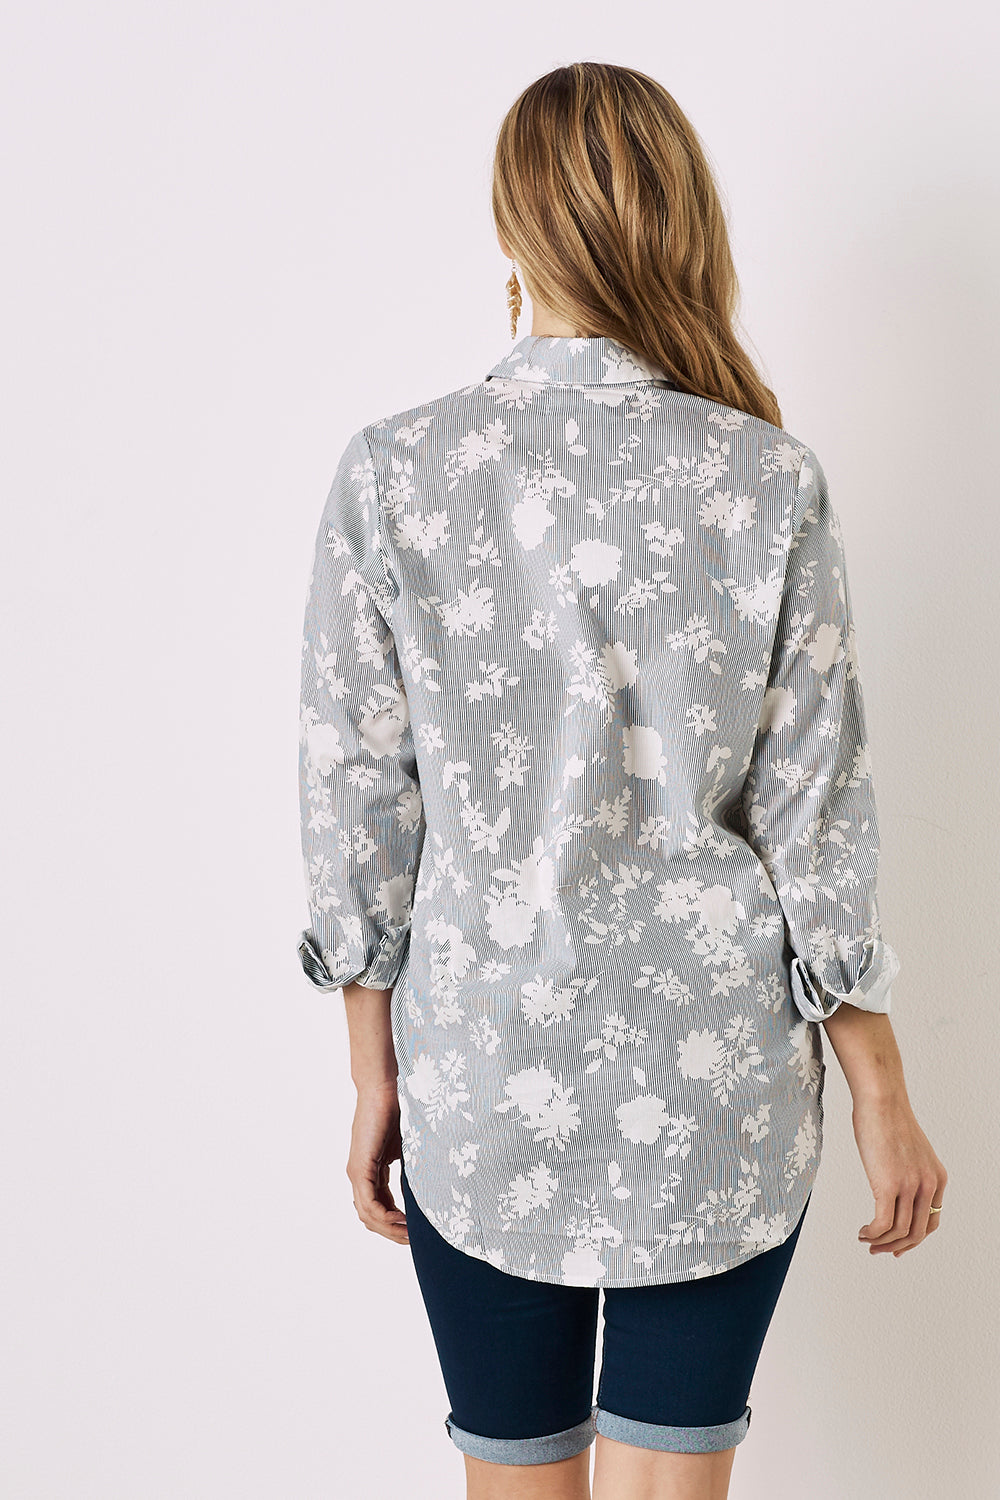 Ella Long Sleeve Collared Shirt Floral Print Tops